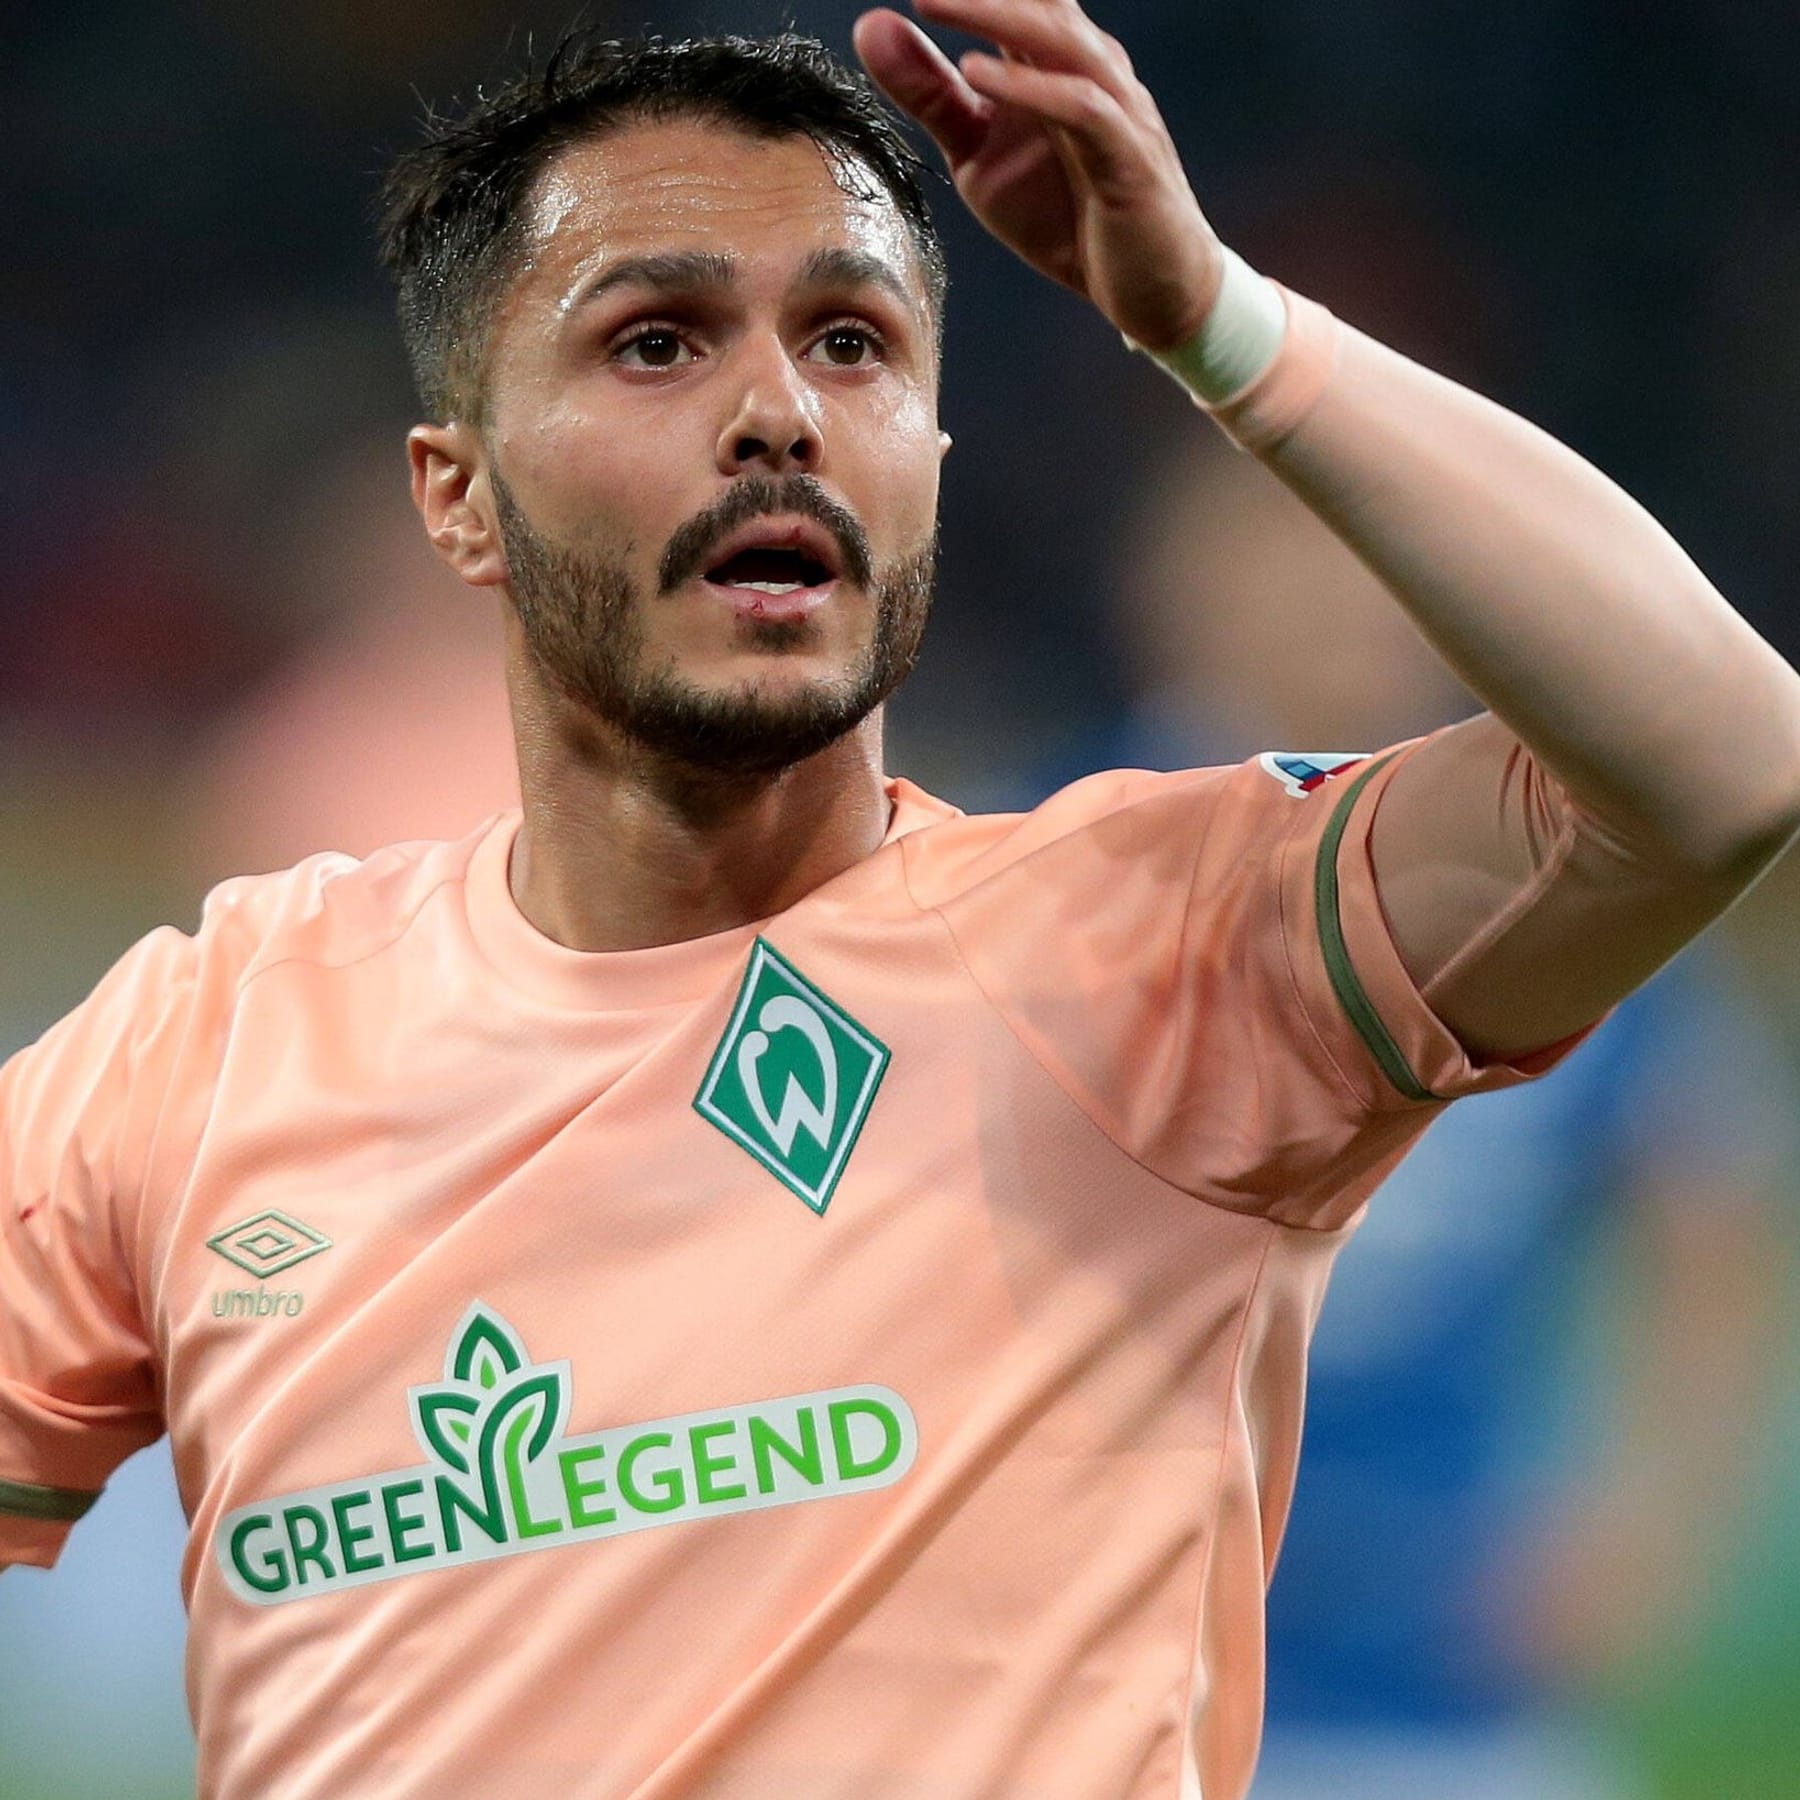 Leonardo Bittencourt goal 82nd minute Werder Bremen 4-0 Mainz - ESPN Video